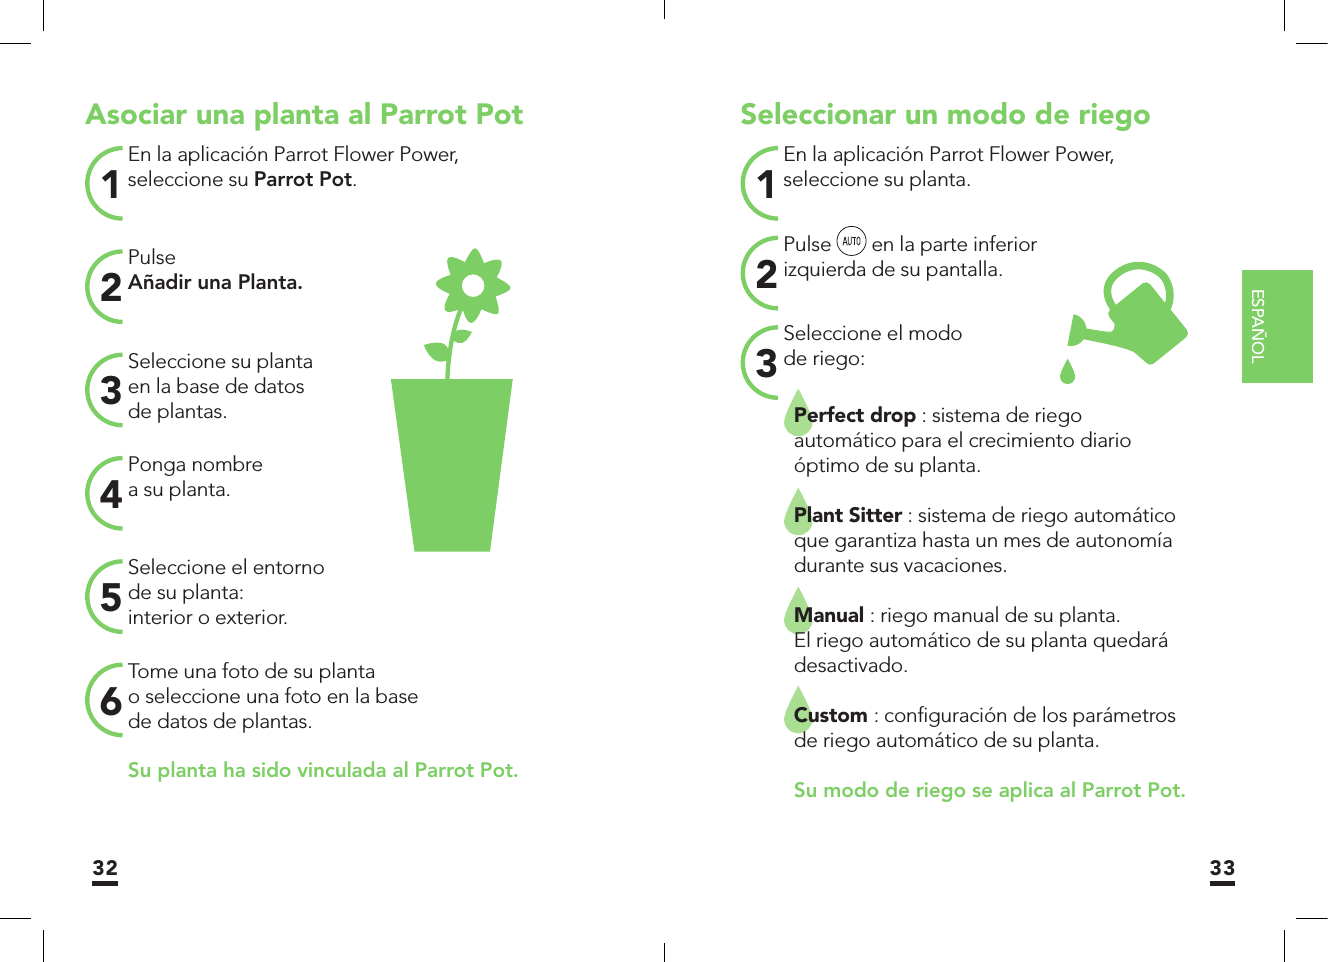 ESPAÑOL32 33Asociar una planta al Parrot PotEn la aplicación Parrot Flower Power, seleccione su Parrot Pot. 1Seleccione su plantaen la base de datosde plantas.3Seleccione el entornode su planta:interior o exterior.5PulseAñadir una Planta.2Ponga nombrea su planta.4Tome una foto de su plantao seleccione una foto en la basede datos de plantas.6Su planta ha sido vinculada al Parrot Pot. Seleccionar un modo de riegoEn la aplicación Parrot Flower Power,seleccione su planta.1Seleccione el modode riego:3Perfect drop : sistema de riegoautomático para el crecimiento diarioóptimo de su planta.Plant Sitter : sistema de riego automático que garantiza hasta un mes de autonomía durante sus vacaciones.Manual : riego manual de su planta.El riego automático de su planta quedará desactivado.Custom : conﬁ guración de los parámetros de riego automático de su planta.    Su modo de riego se aplica al Parrot Pot.Pulse   en la parte inferiorizquierda de su pantalla.2 